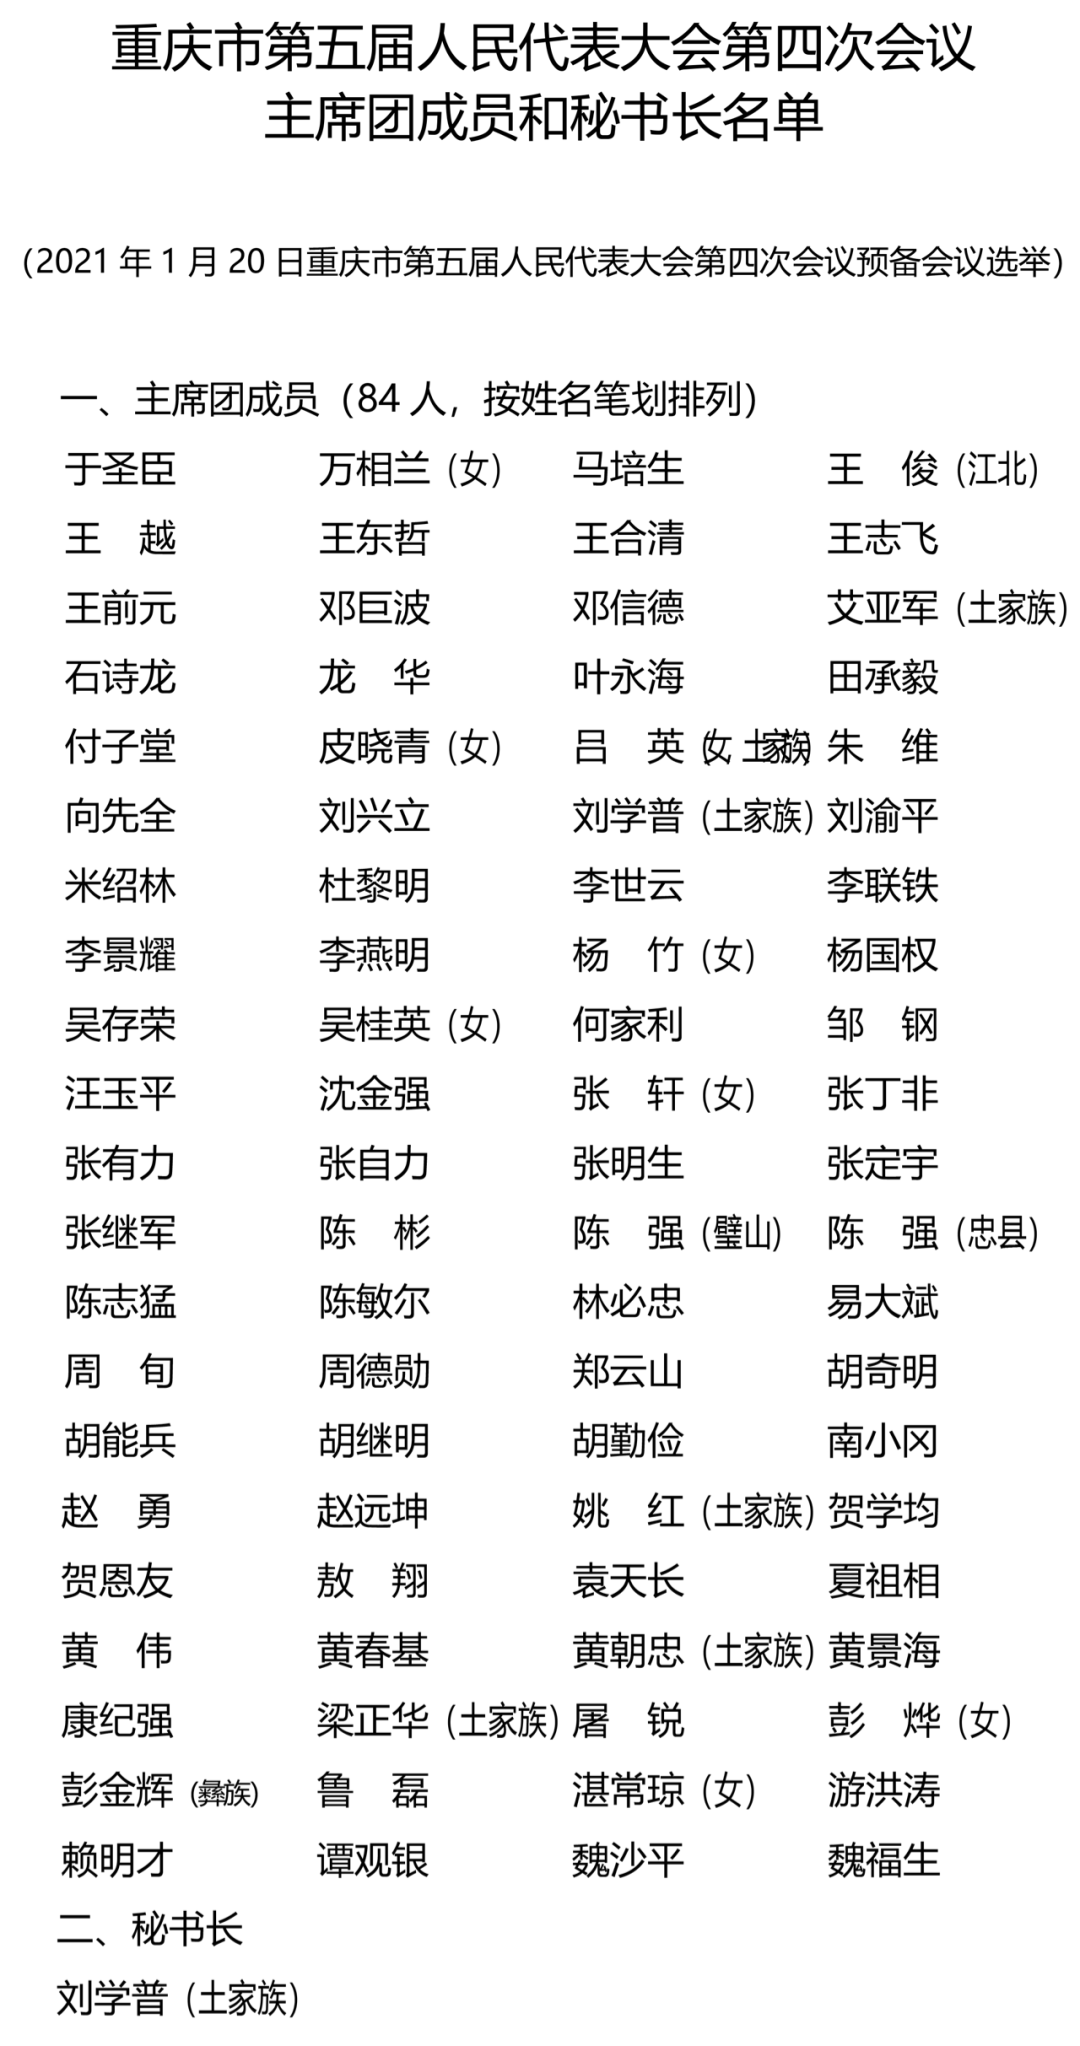 重庆市第五届人民代表大会第四次会议 主席团成员和秘书长名单